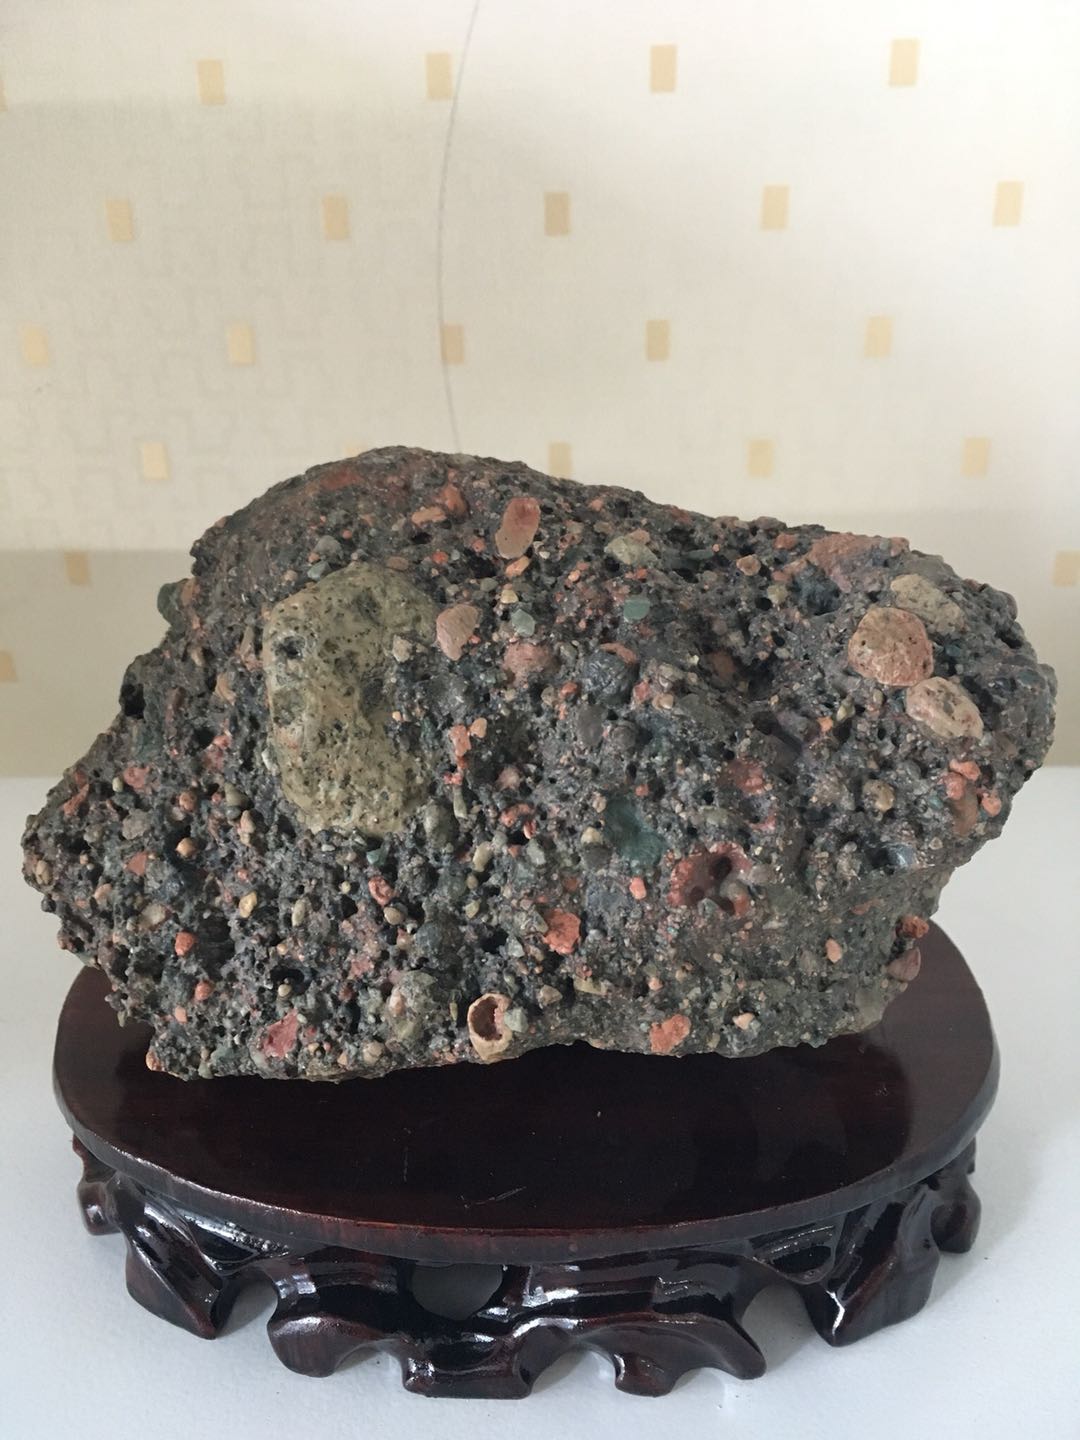 无磁性角砾岩陨石图片图片